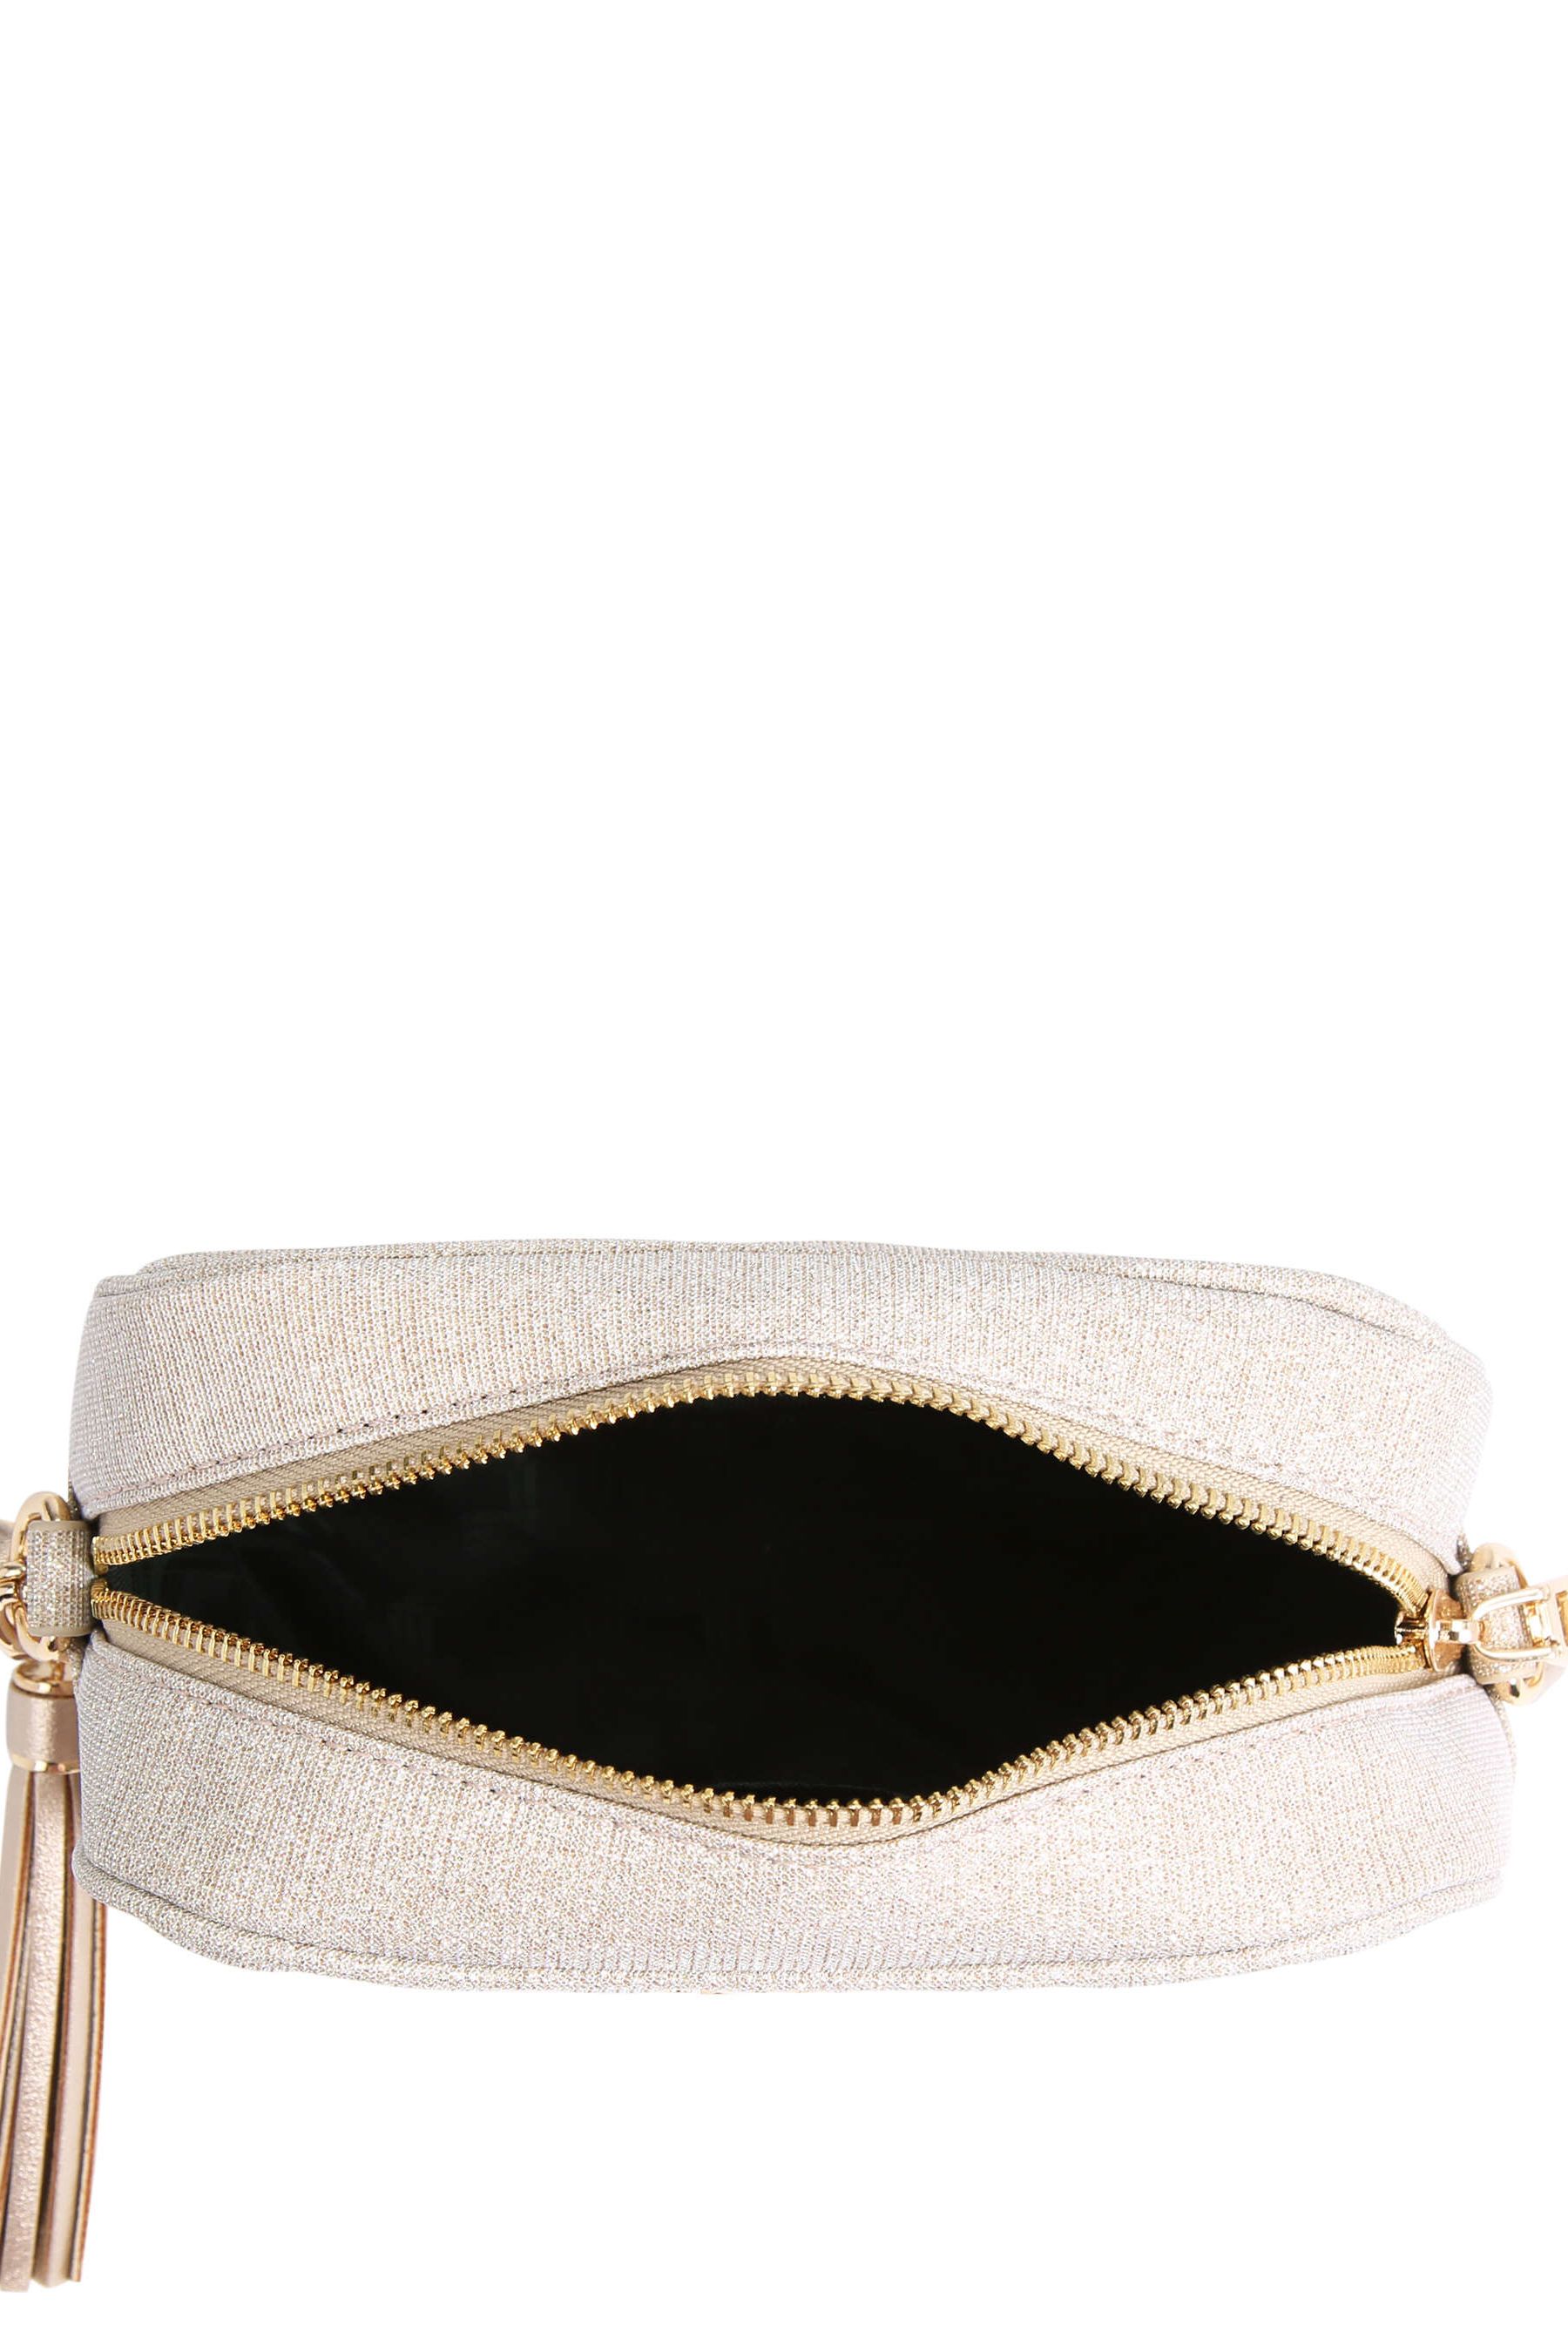 Buy Carvela Gold Lara Tassel Cross Body Bag from the Next UK online shop